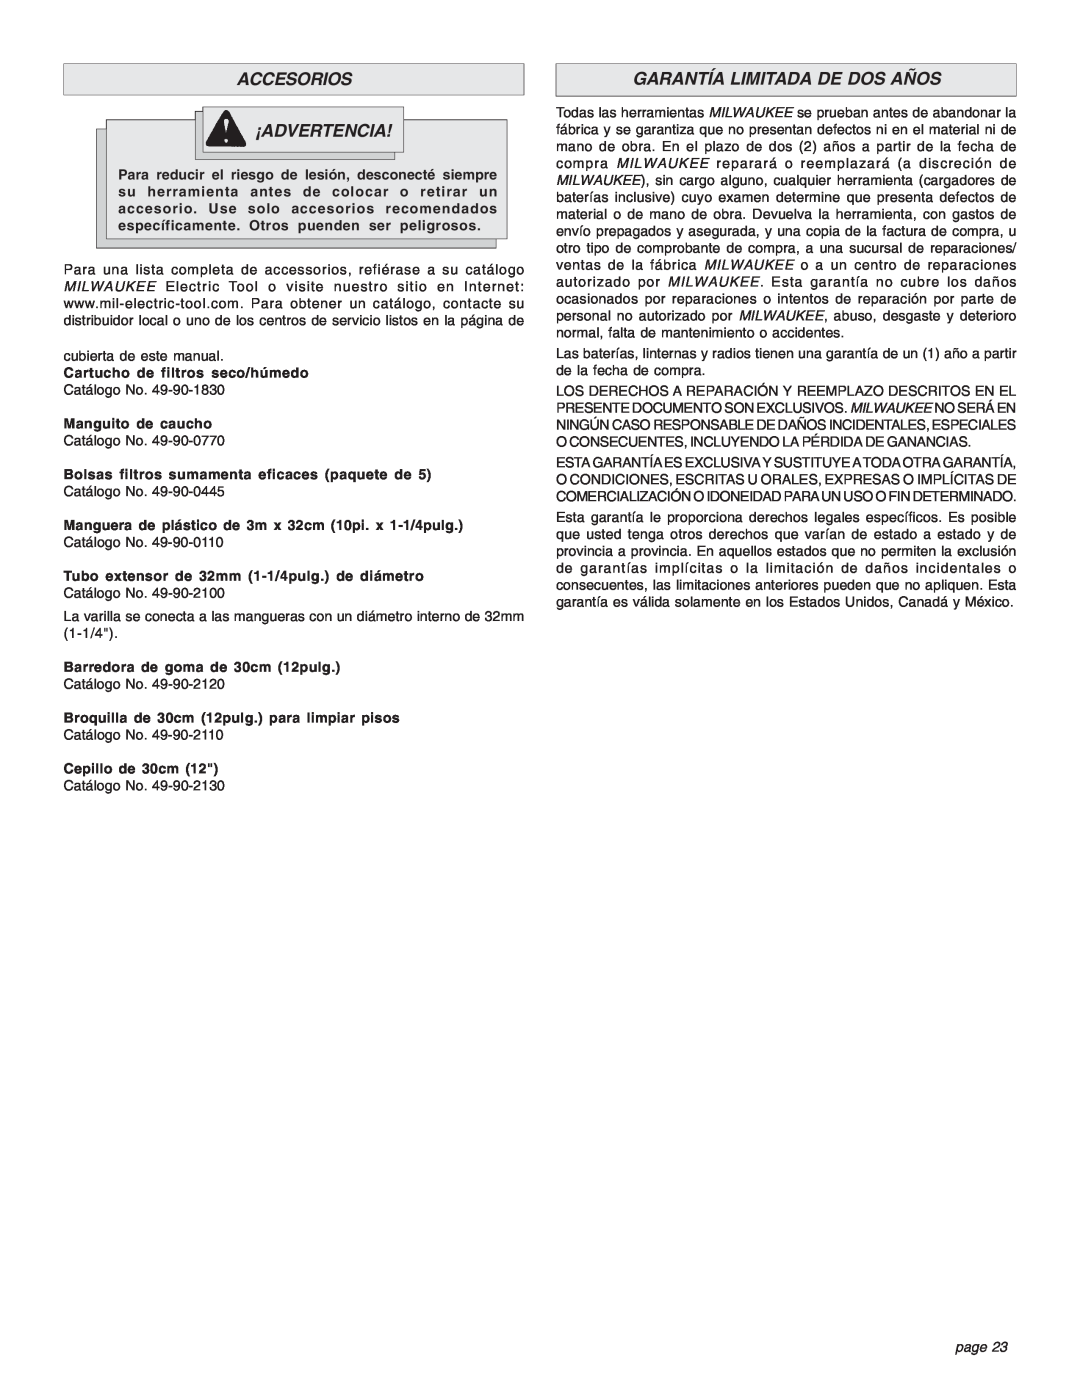 Intec 8940-20 manual Accesorios ¡Advertencia, Garantía Limitada De Dos Años, page 